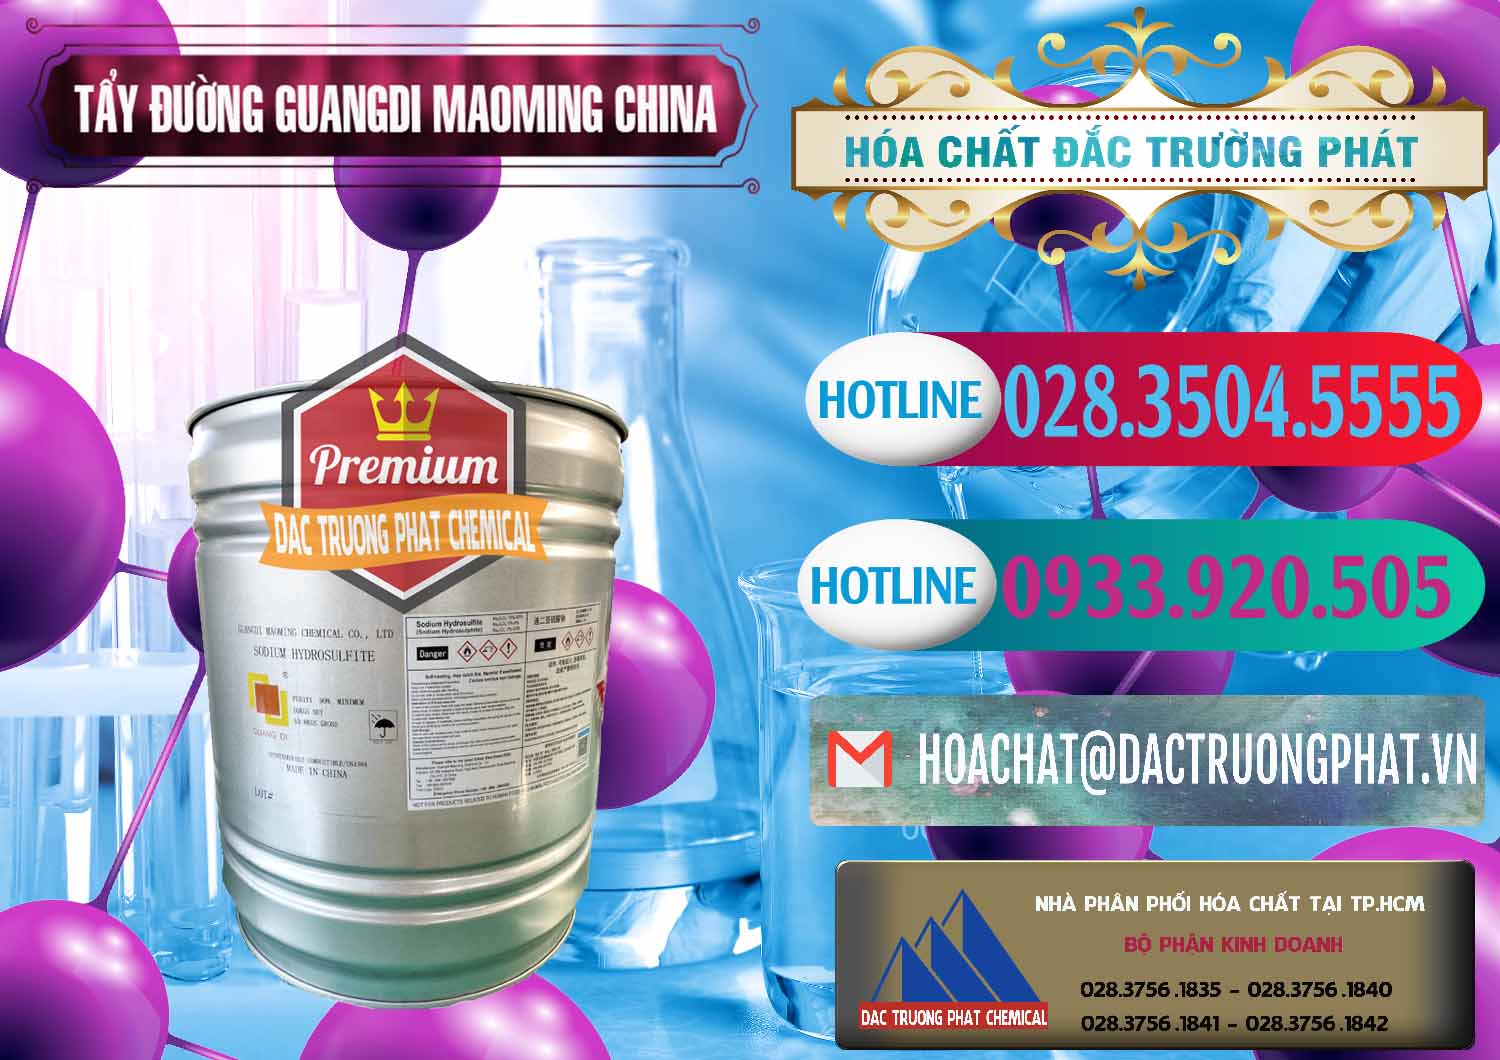 Nơi cung cấp _ bán Tẩy Đường - NA2S2O4 Guangdi Maoming Thùng Xám Trung Quốc China - 0402 - Chuyên nhập khẩu ( phân phối ) hóa chất tại TP.HCM - truongphat.vn